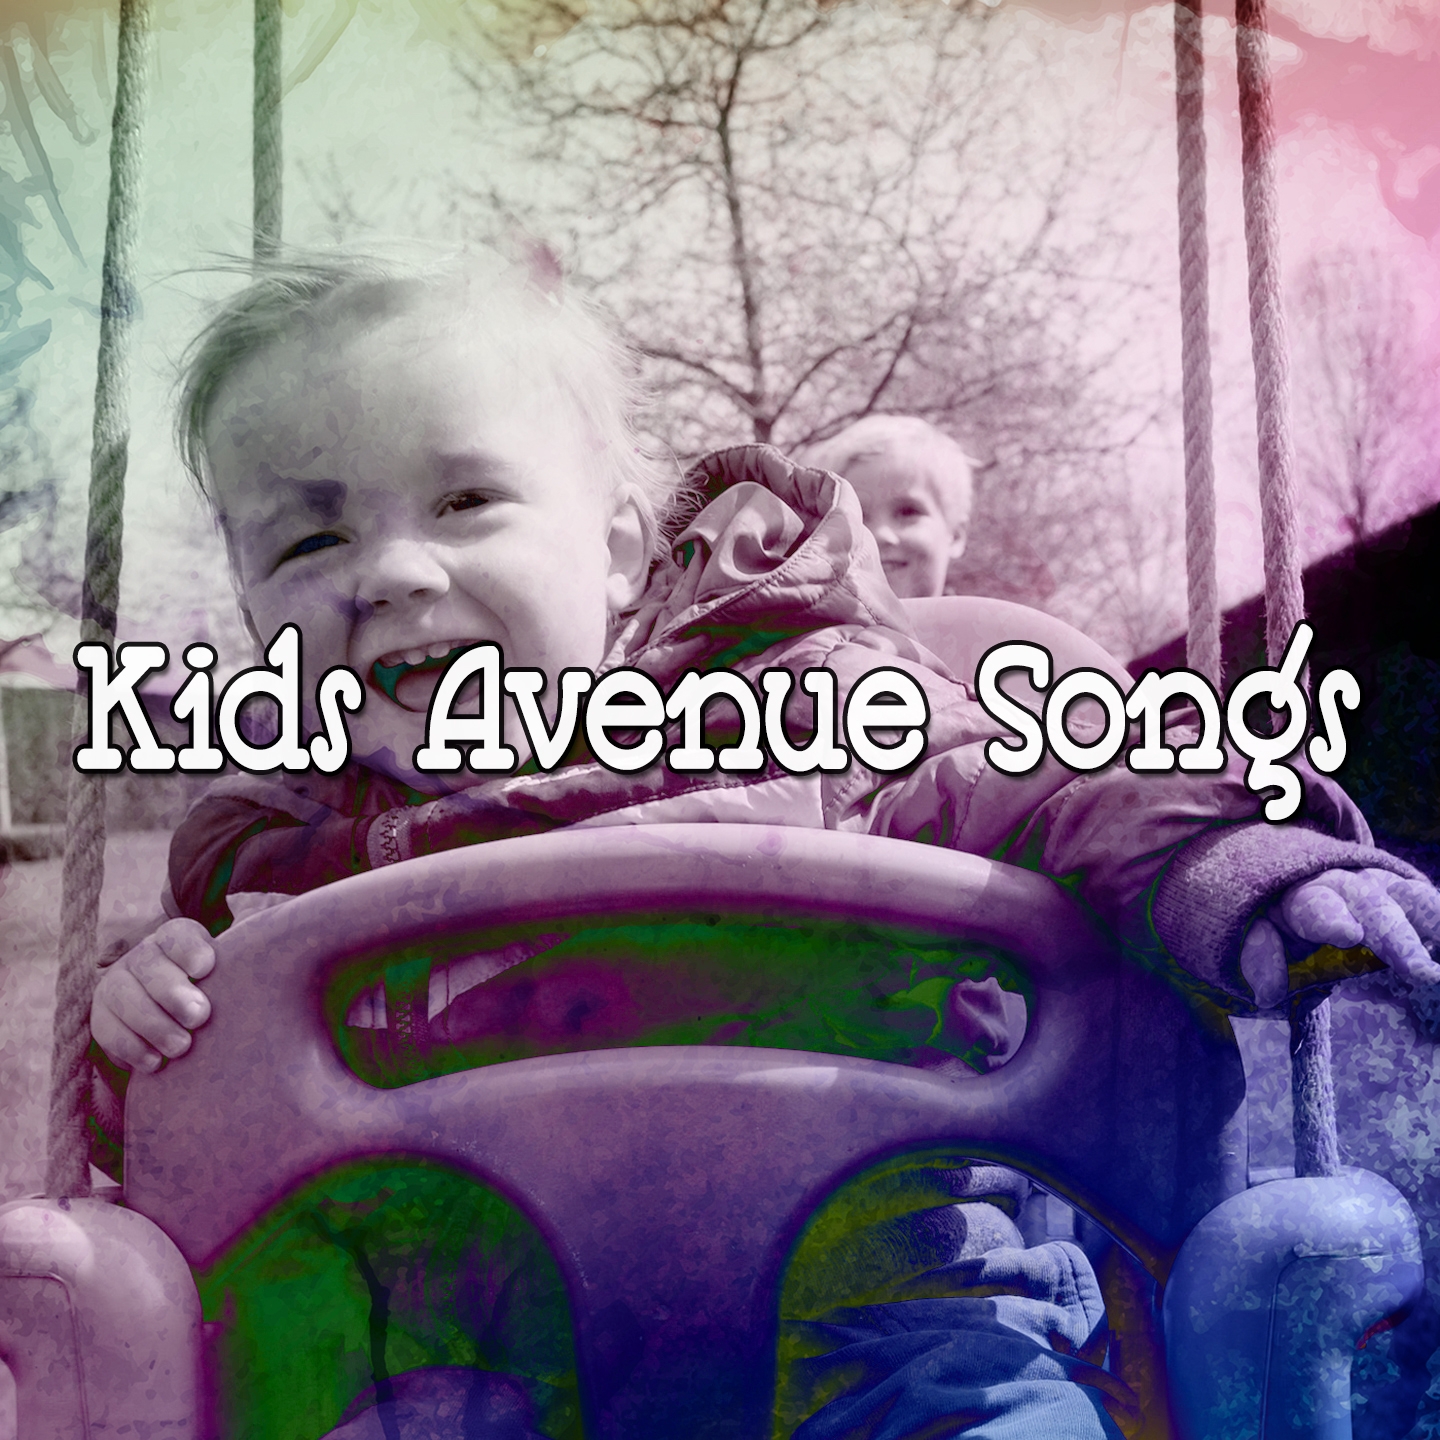 Kids Avenue Songs